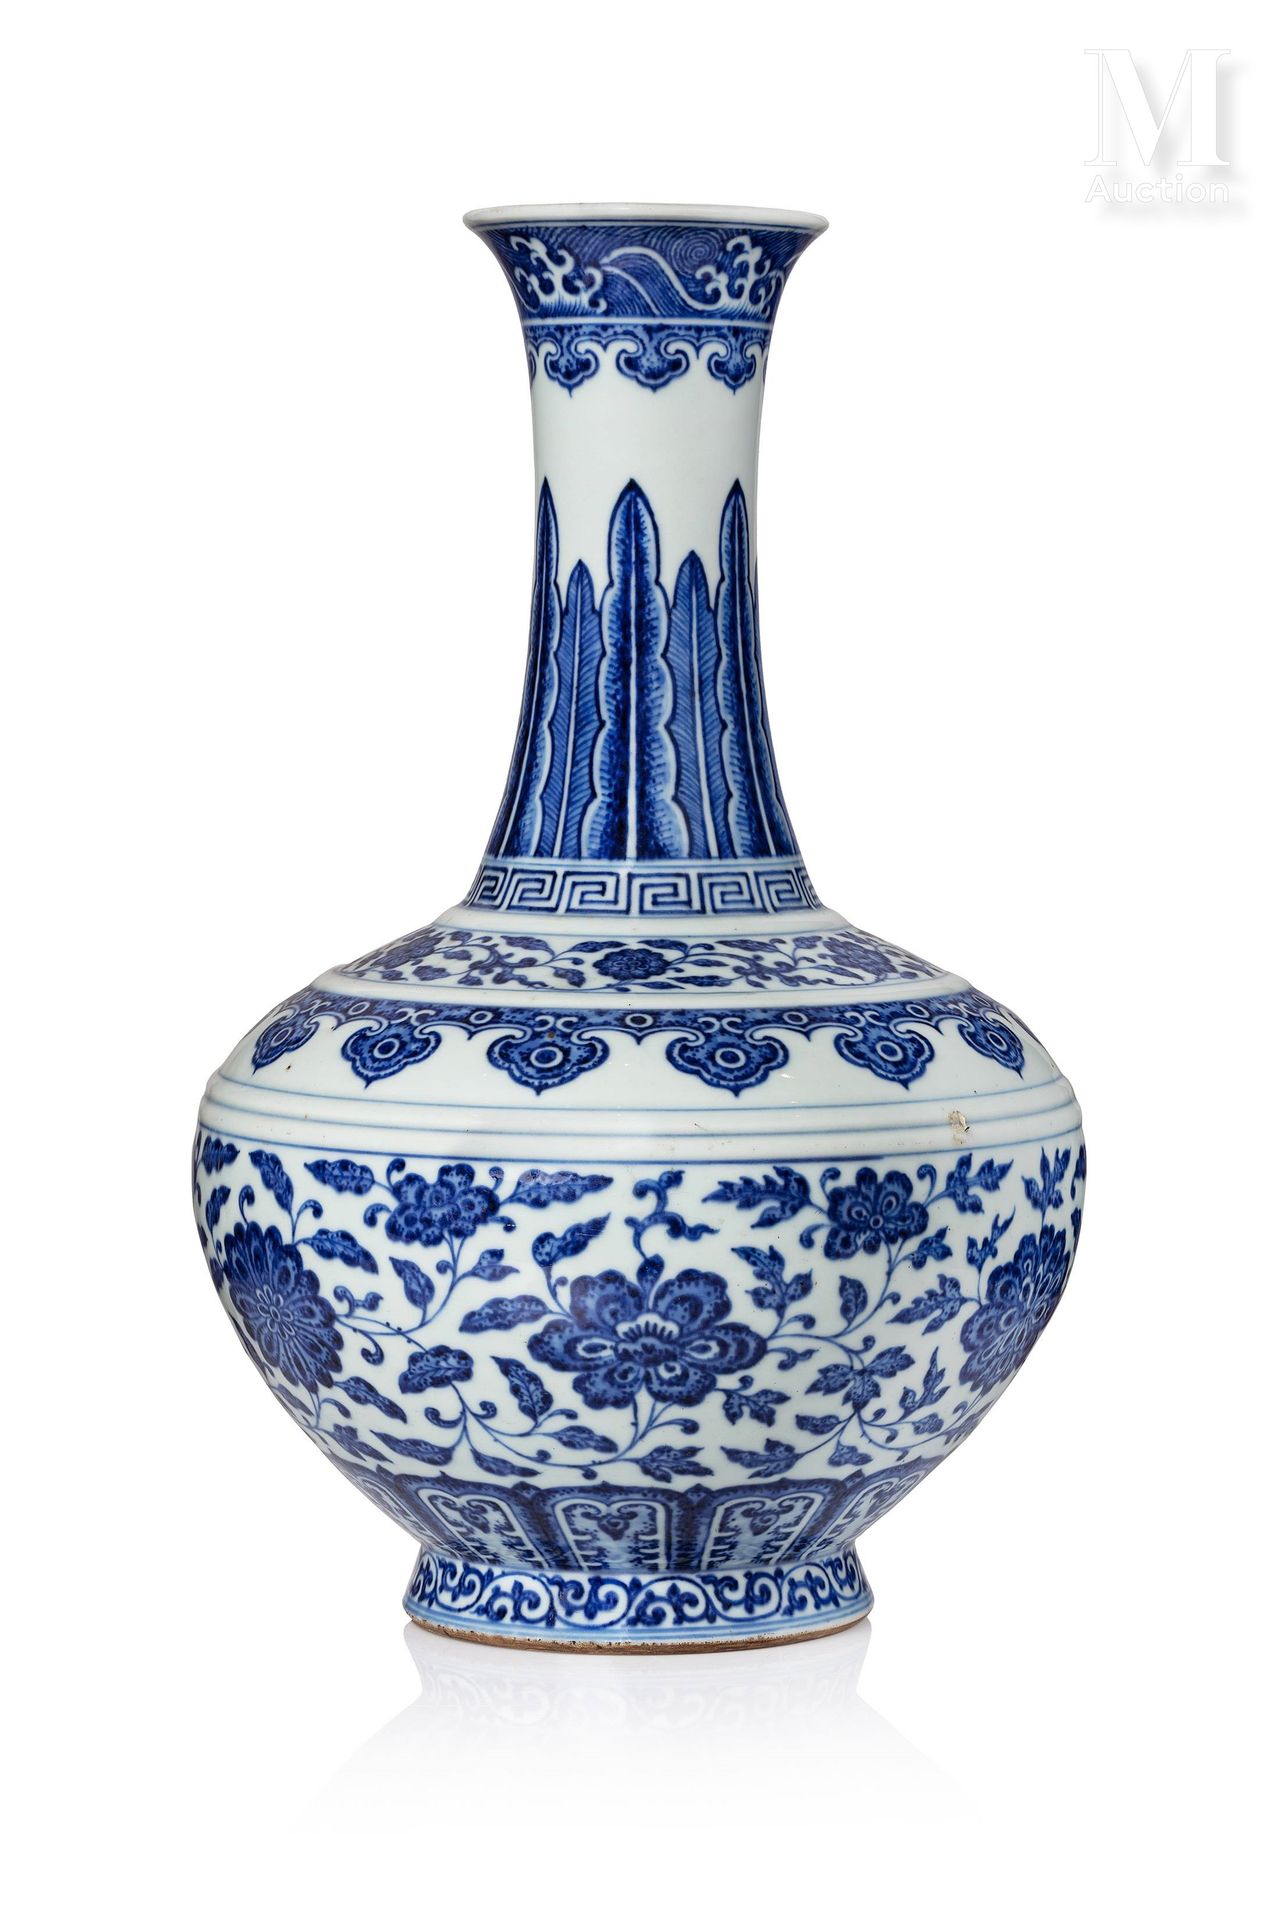 CHINE, XVIIIe SIÈCLE 
Balusterförmige Vase aus Porzellan mit blau-weißem Dekor a&hellip;